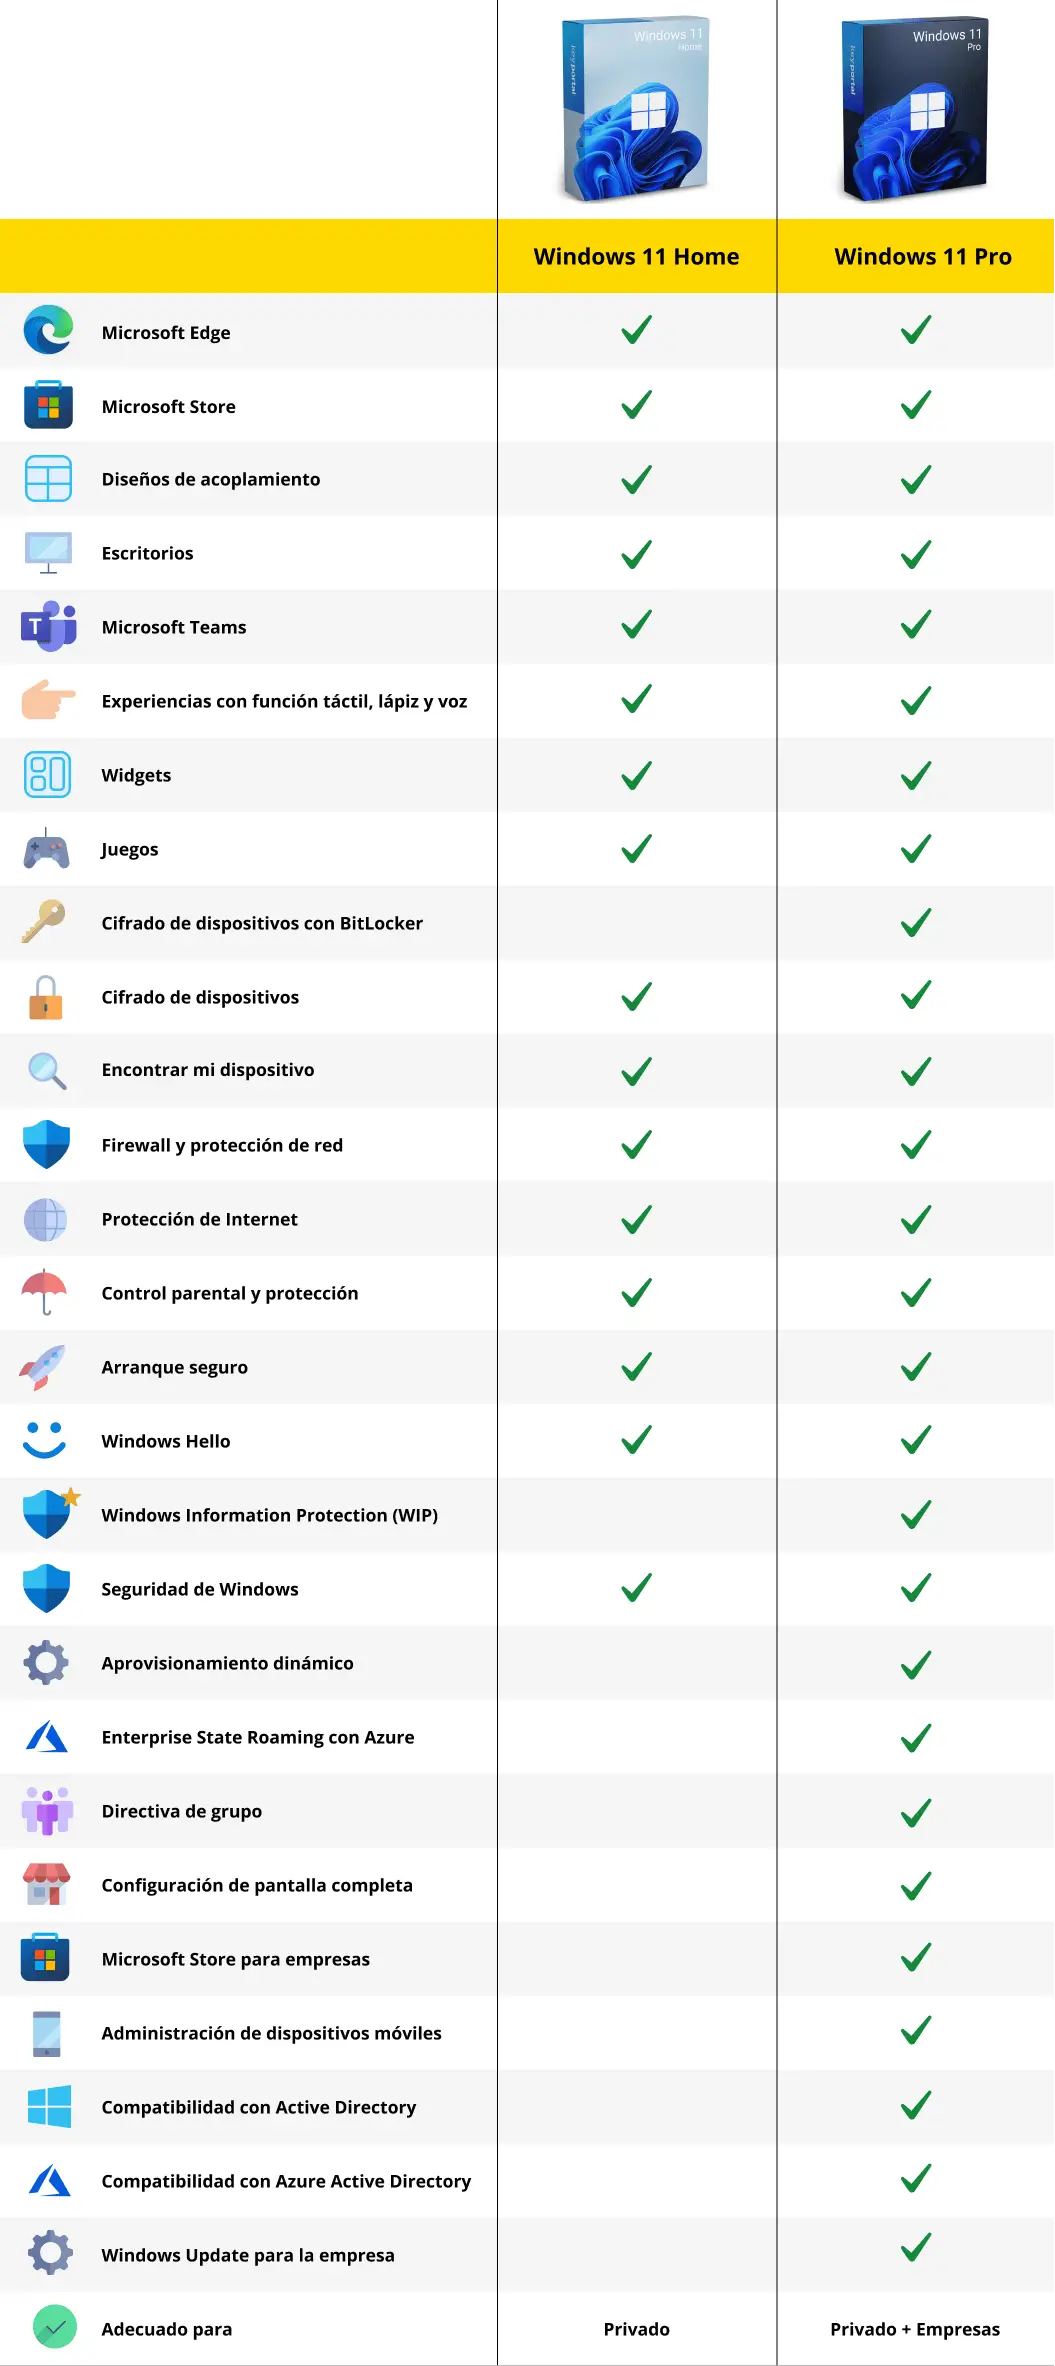 Comparación de Windows 11 Home y Windows 11 Pro